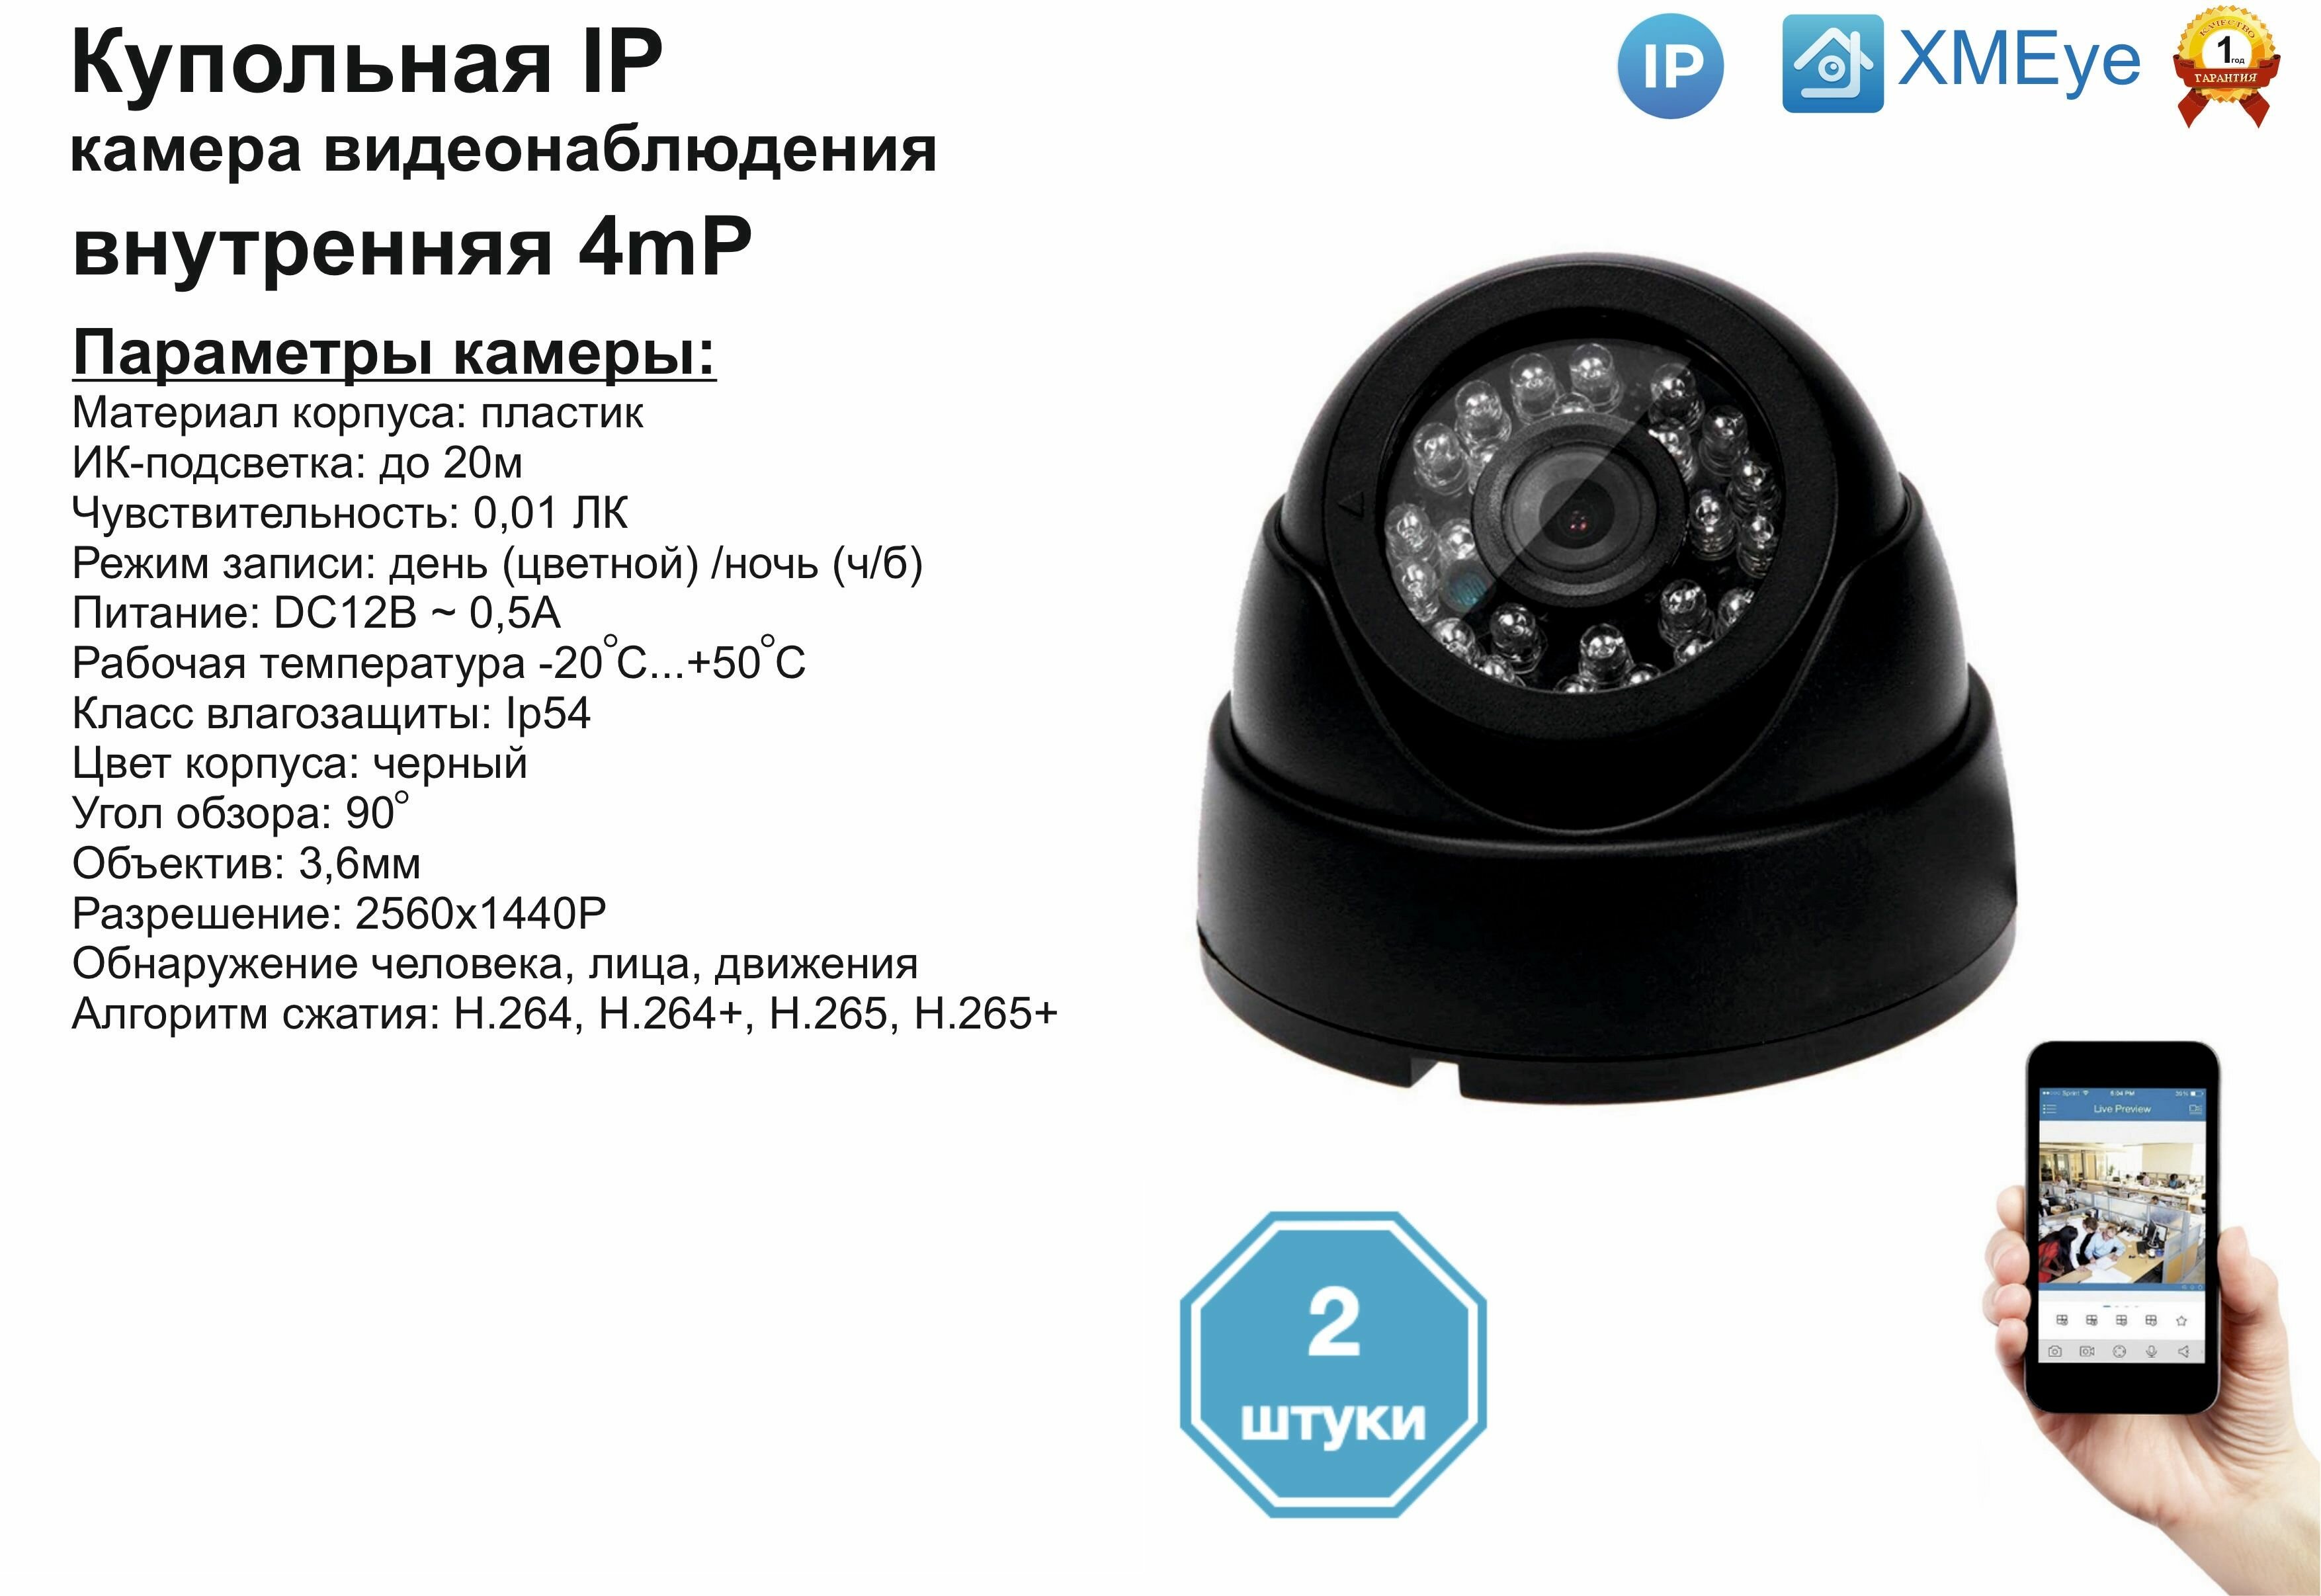 (2шт) DVB300IP4MP. Внутренняя IP камера 4мП с ИК до 20м.